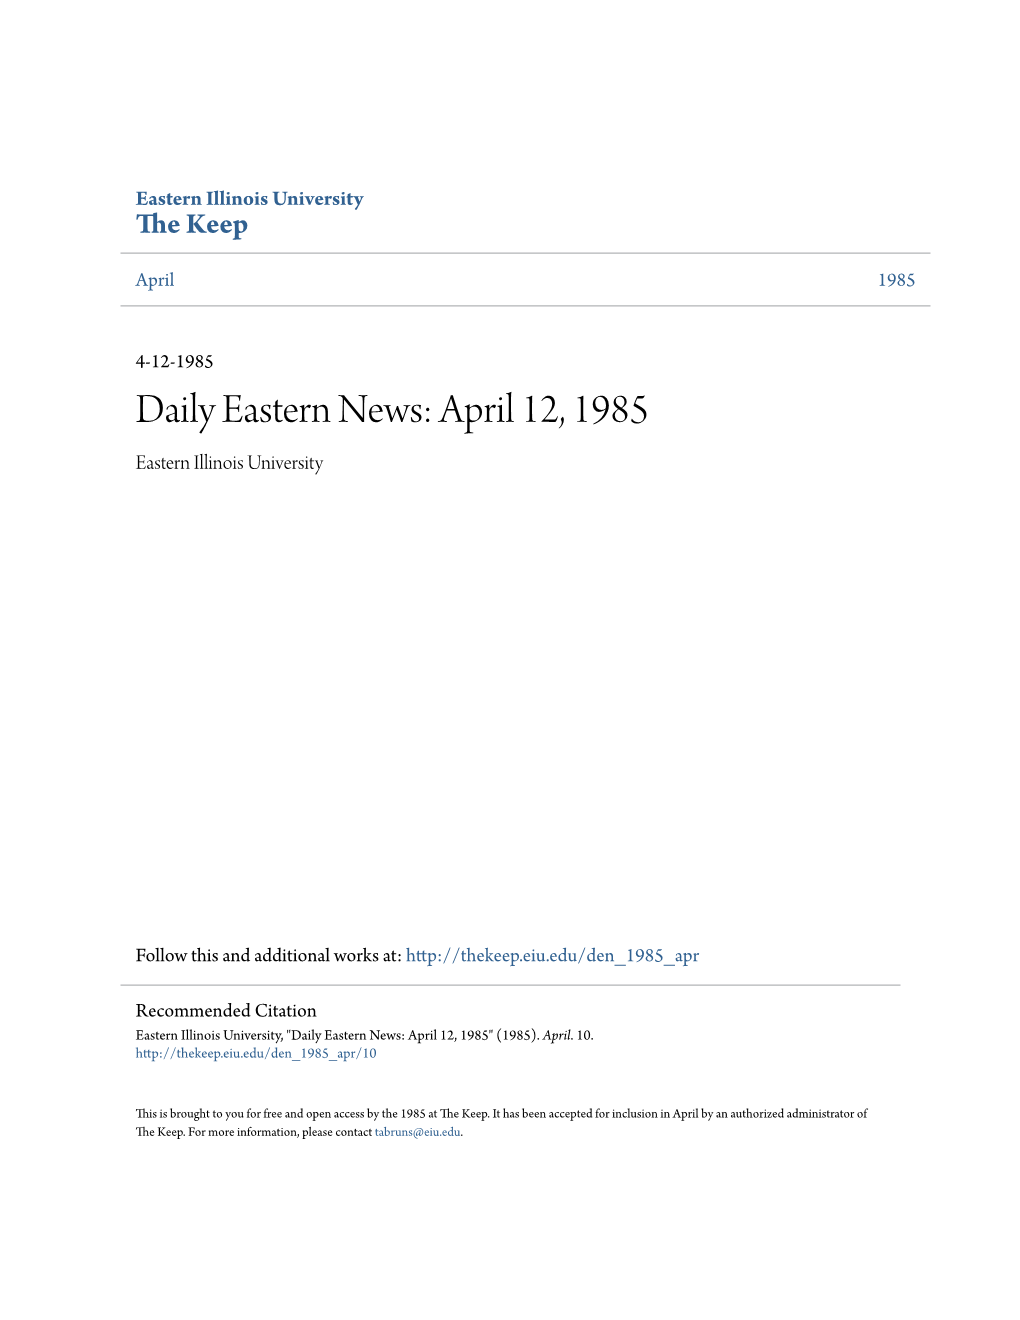 Eastern News: April 12, 1985 Eastern Illinois University